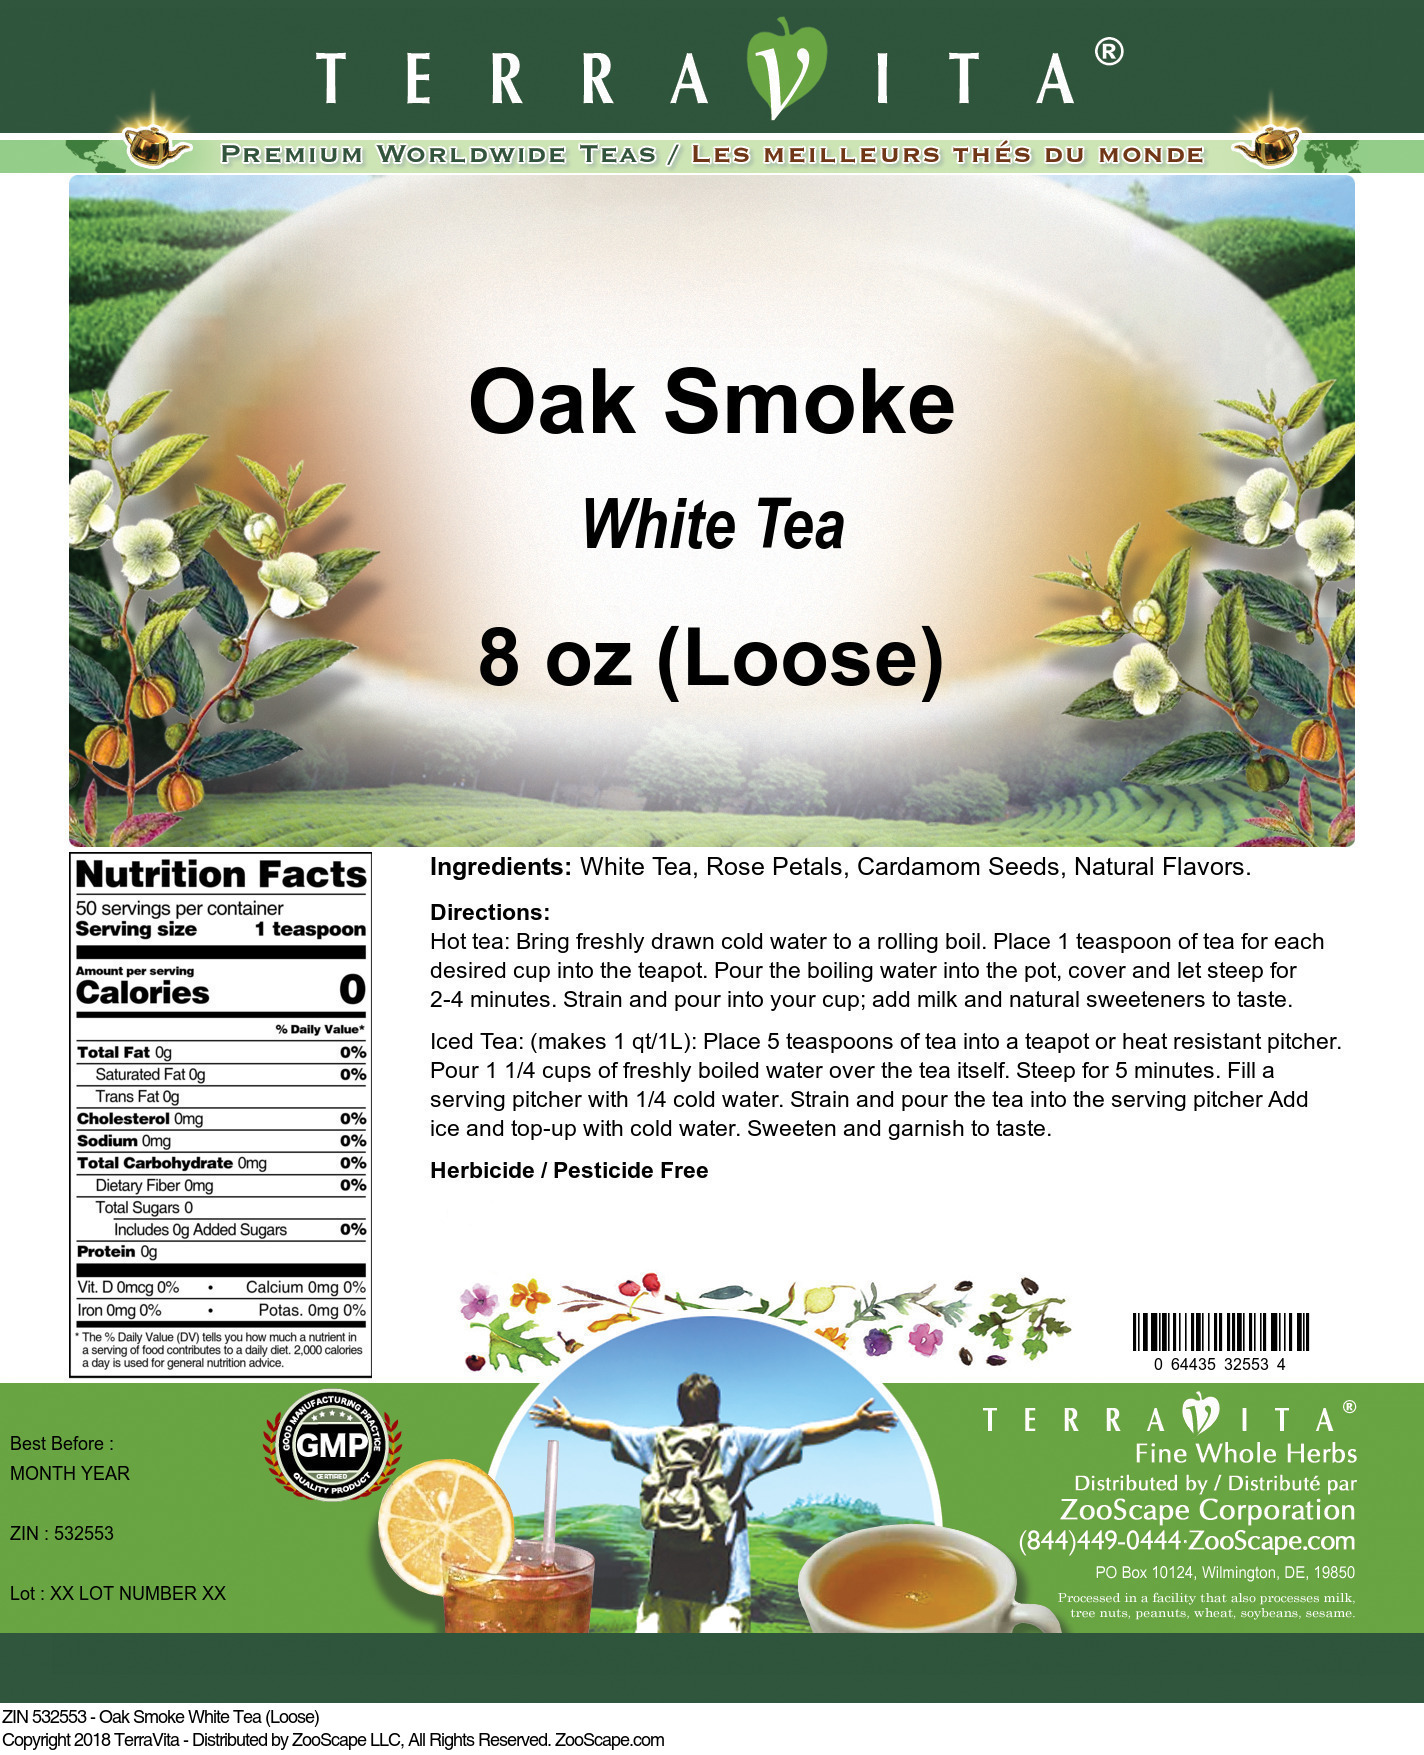 Oak Smoke White Tea (Loose) - Label